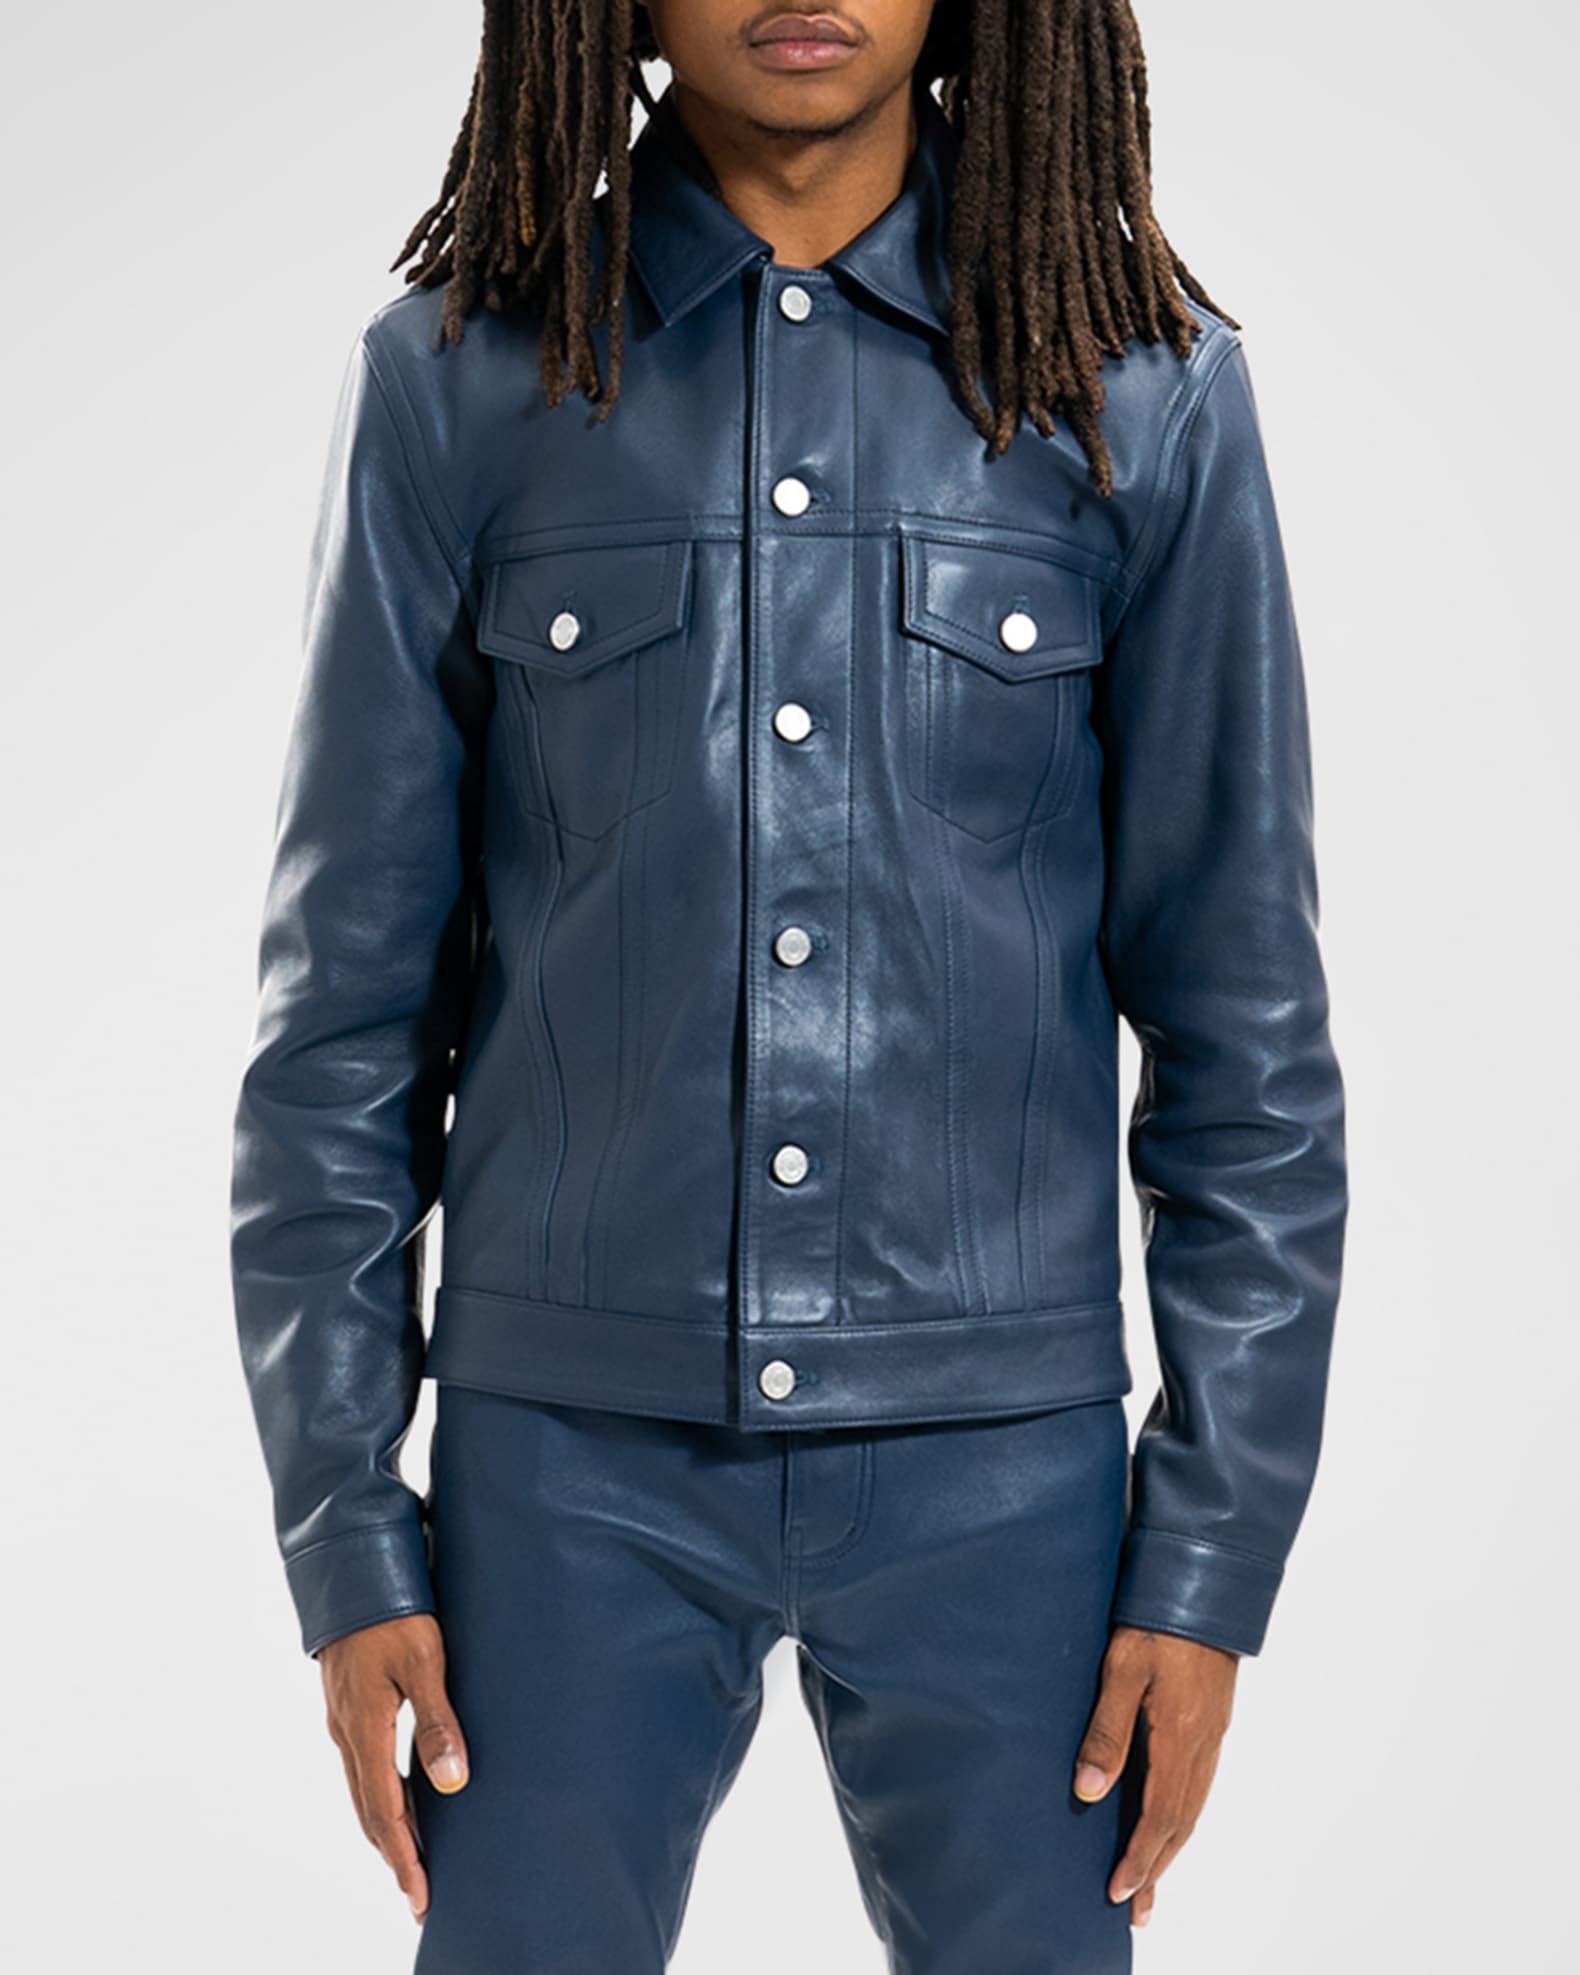 Louis Vuitton x Supreme 2017 Denim Trucker Jacket - Blue Outerwear